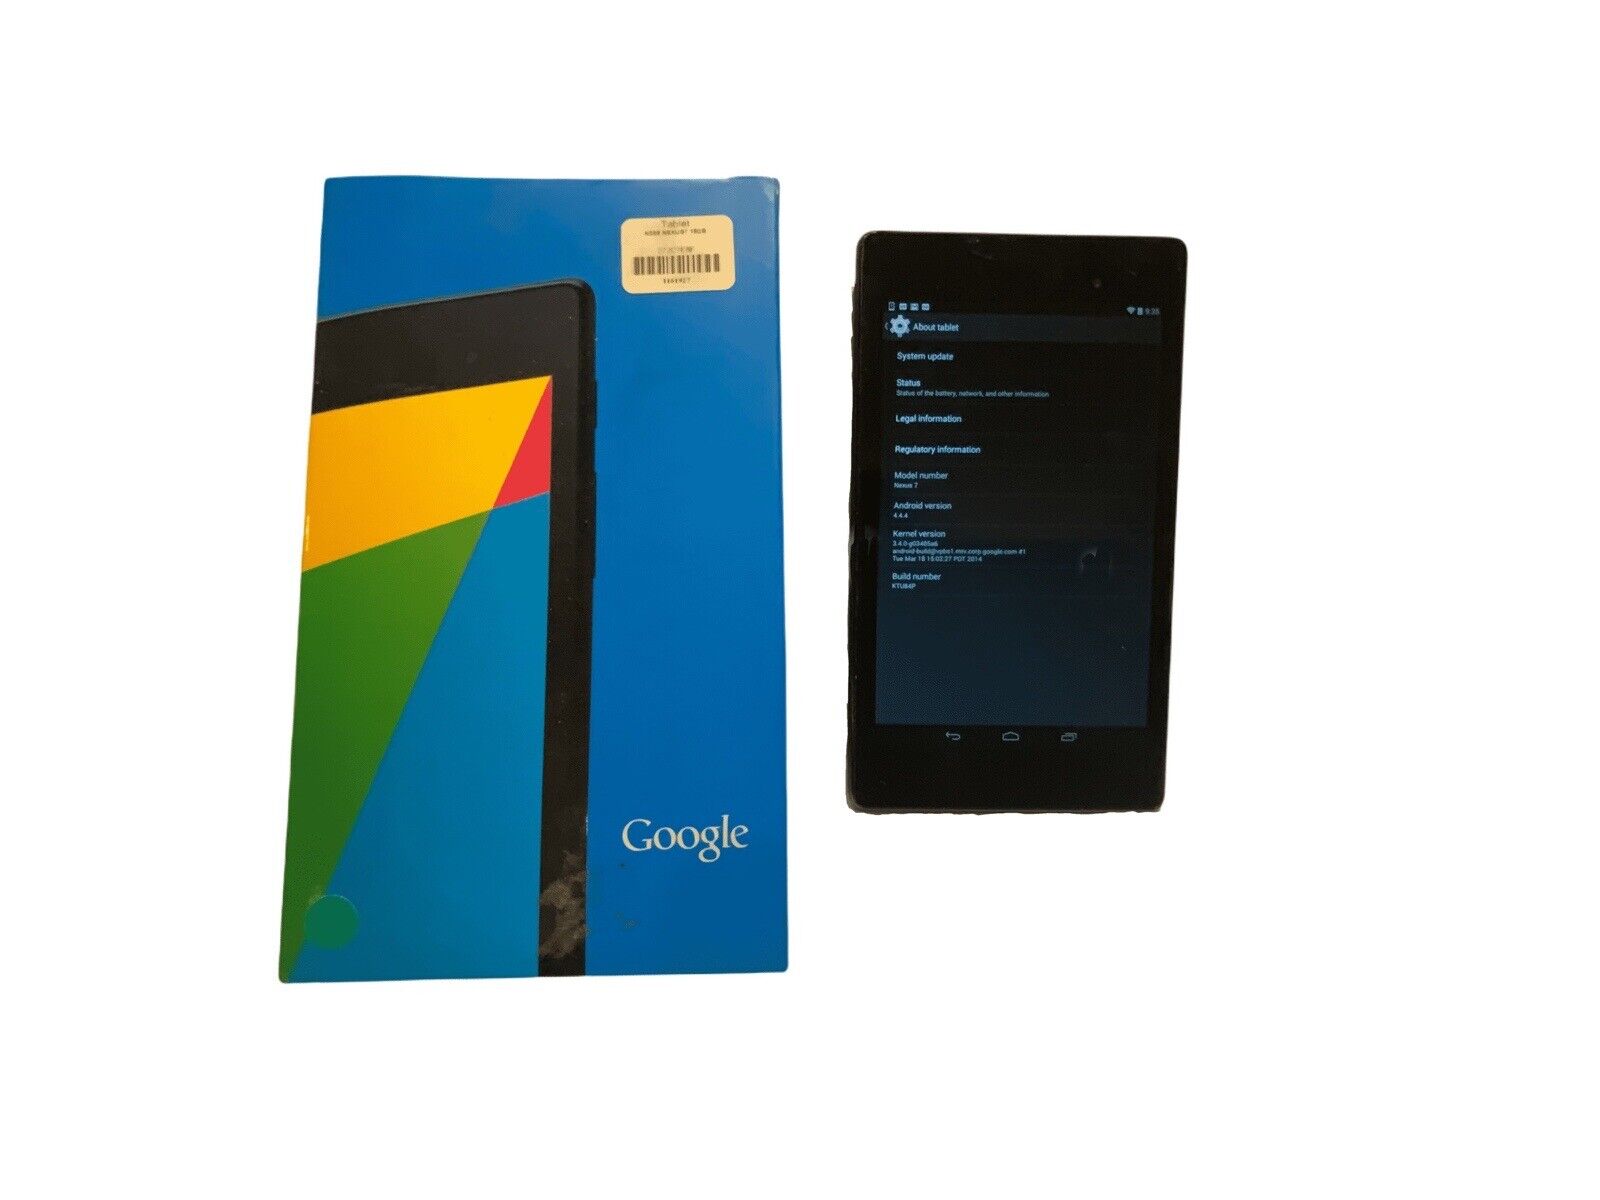 ASUS Google Nexus 7 - 16GB Wi-Fi Black Tablet Bundle - Great Condition